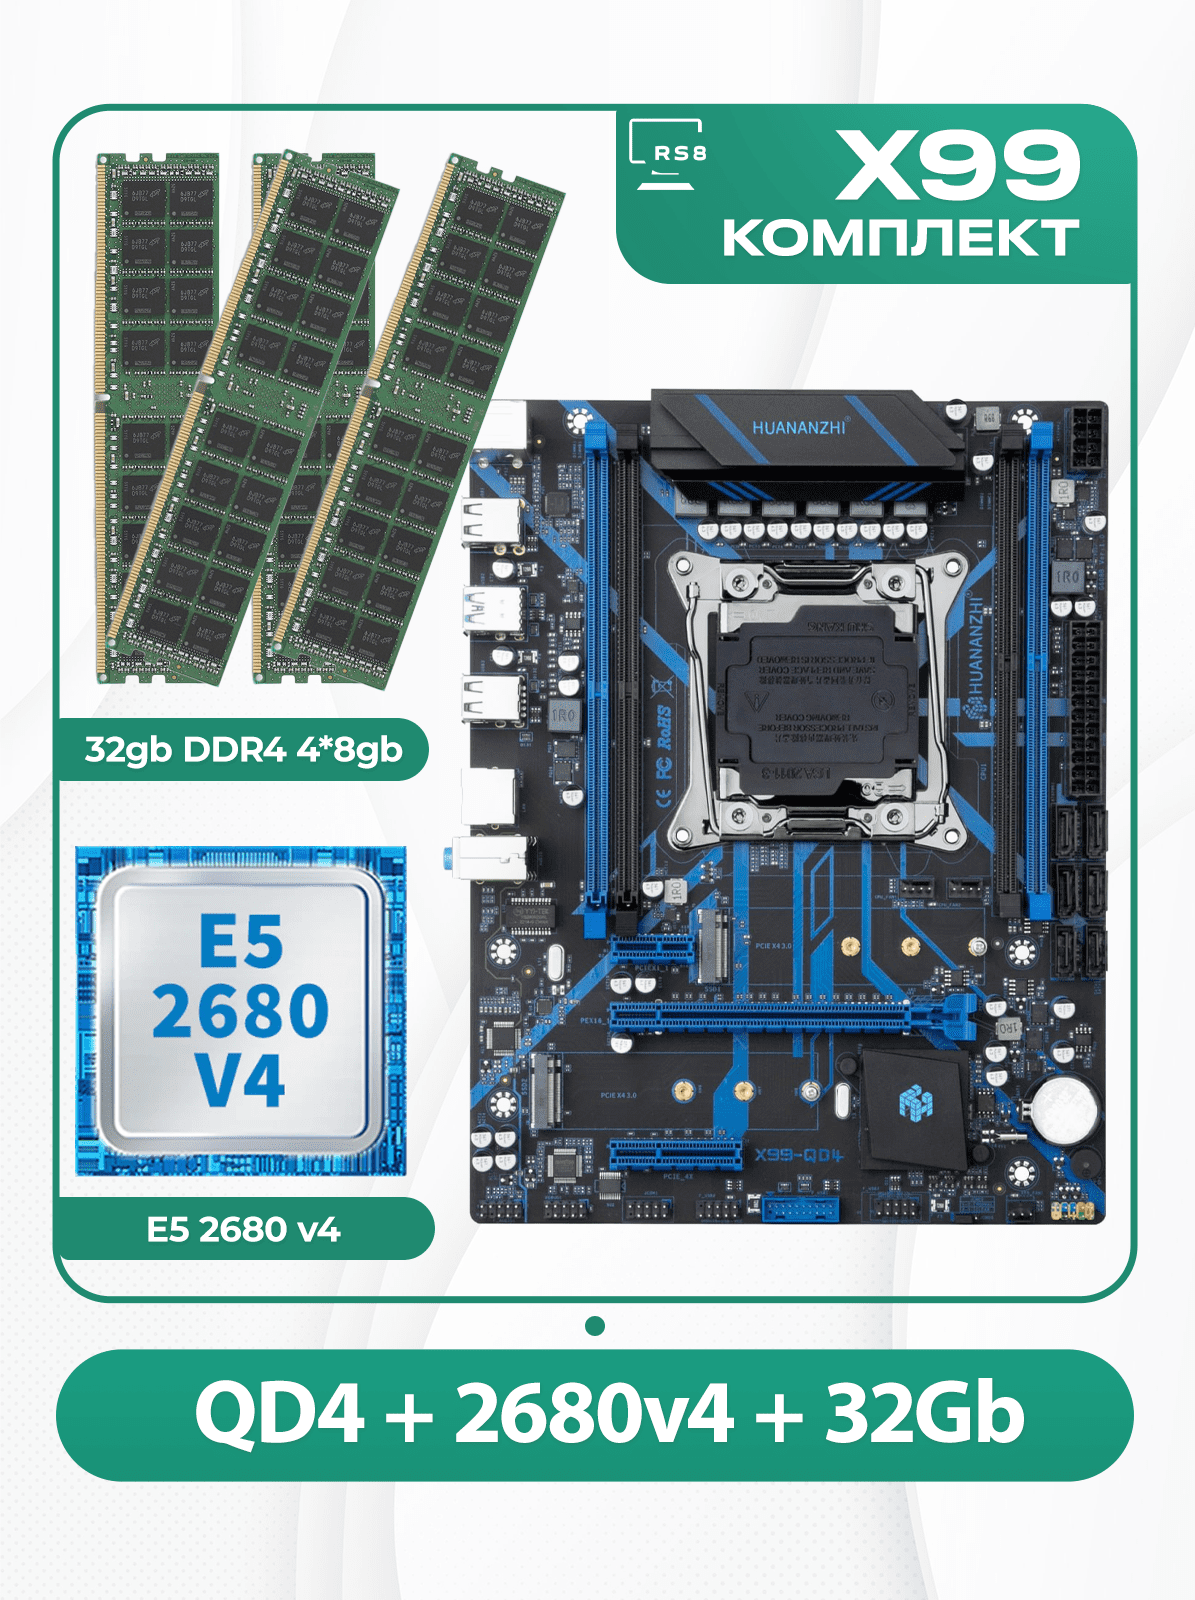 Комплект материнской платы X99: Huananzhi QD4 2011v3 + Xeon E5 2680v4 + DDR4 32Гб ECC 4х8Гб